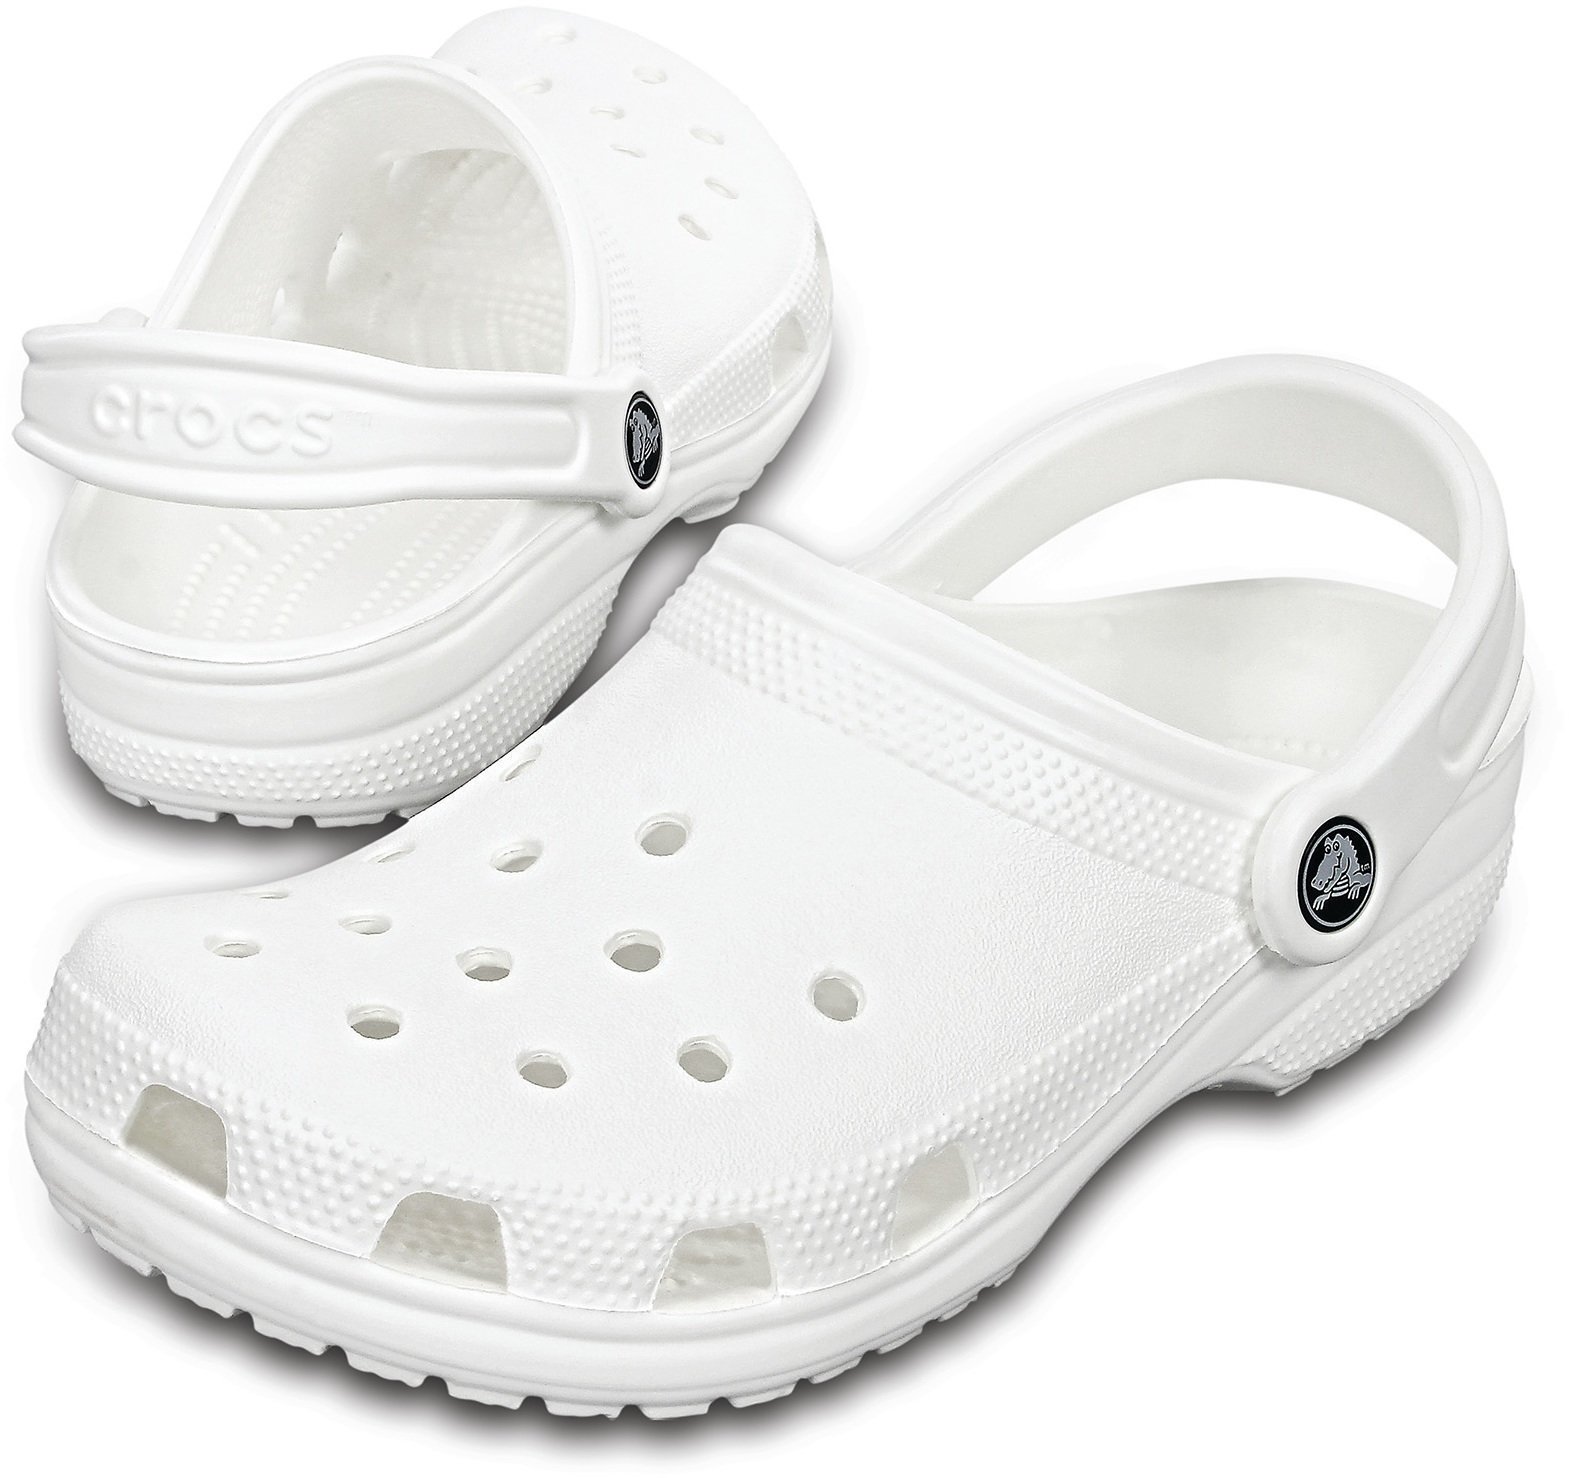 Jachtařská obuv Crocs Classic Clog White 46-47